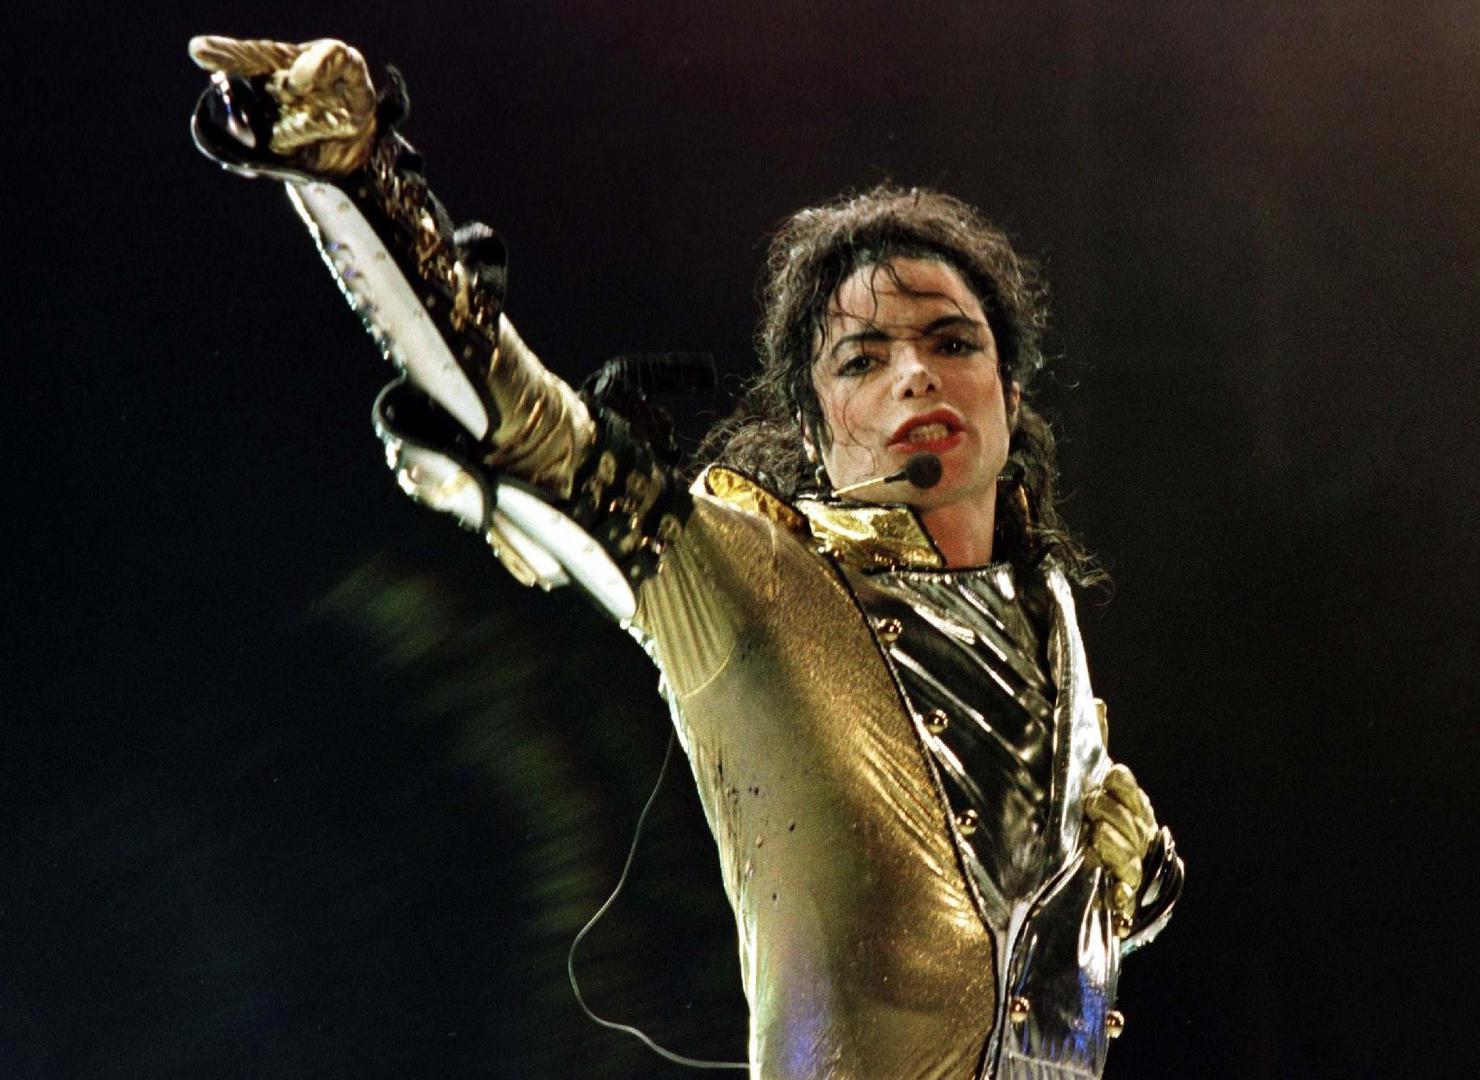 Kralj popa Michael Jackson preminuo je 2009. godine, a kao uzrok smrti navedeno je uzimanje lijeka Propofol. Kasnije je zbog njegove smrti na sudu završio njegov liječnik Conrad Murray jer je nemarno liječio pjevača. Pojavile su se i brojen teorije kako je Jackson zapravo ubijen.